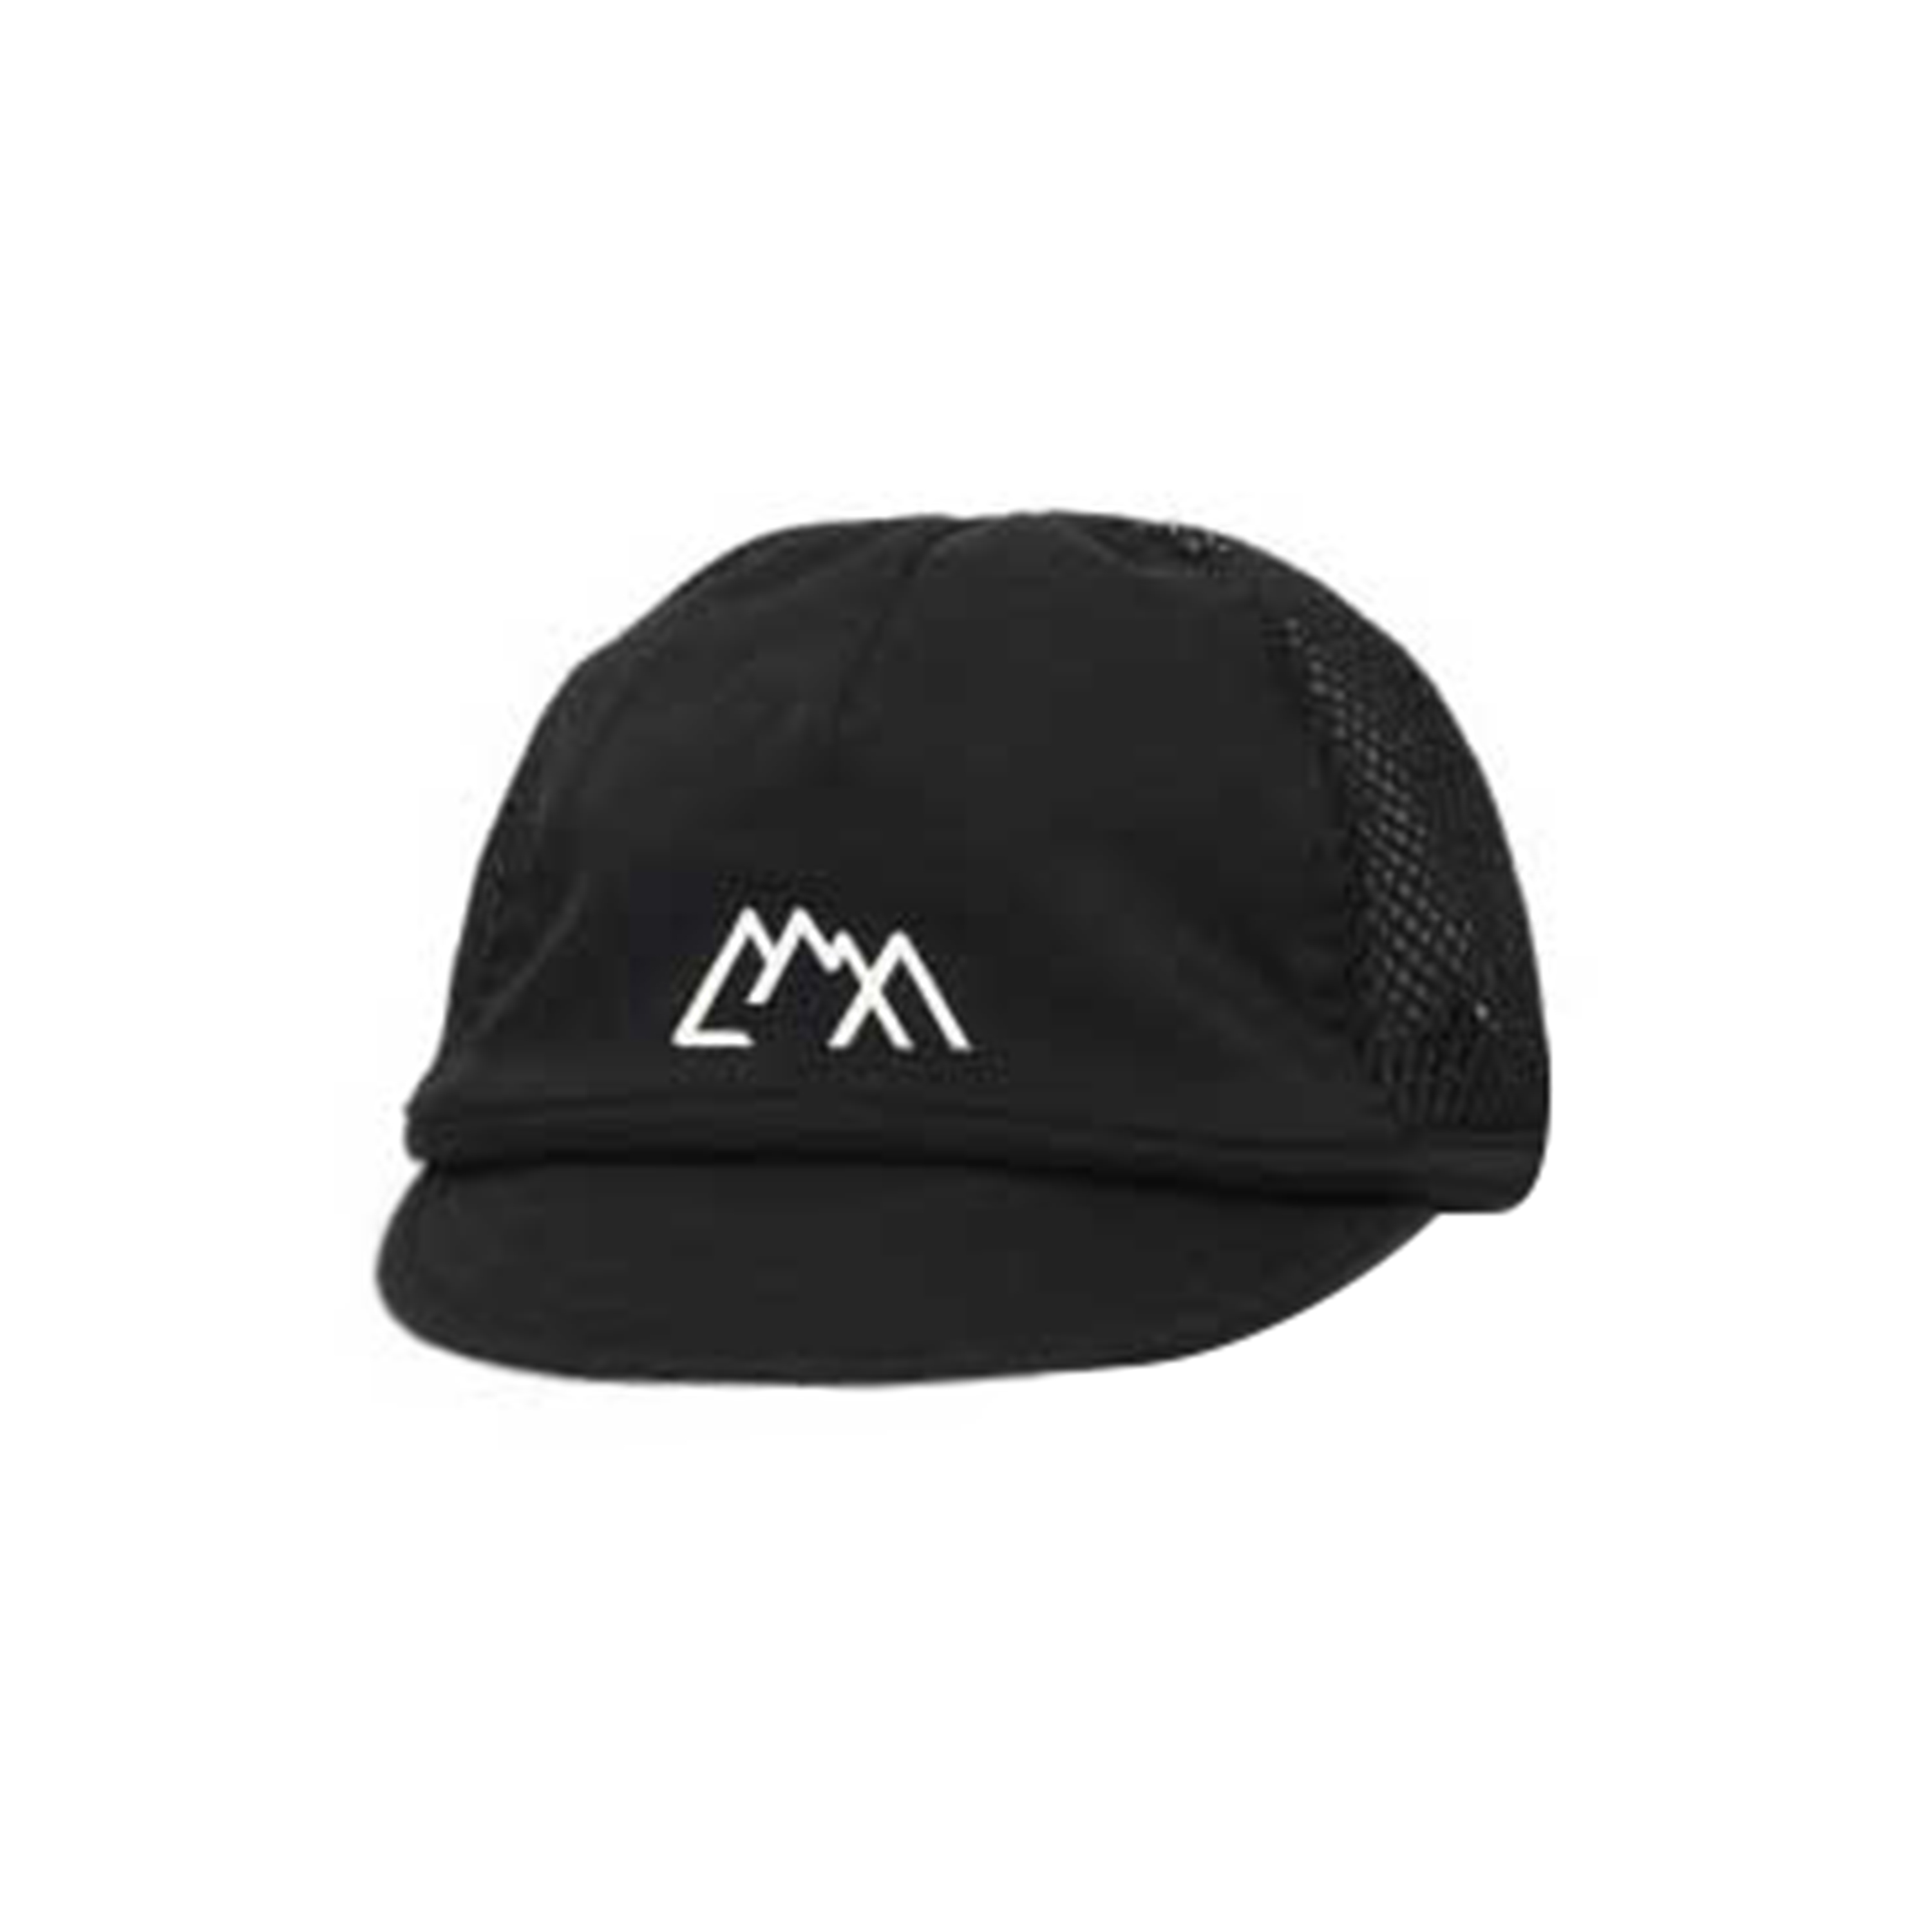 SIMPLE CAP - BLACK